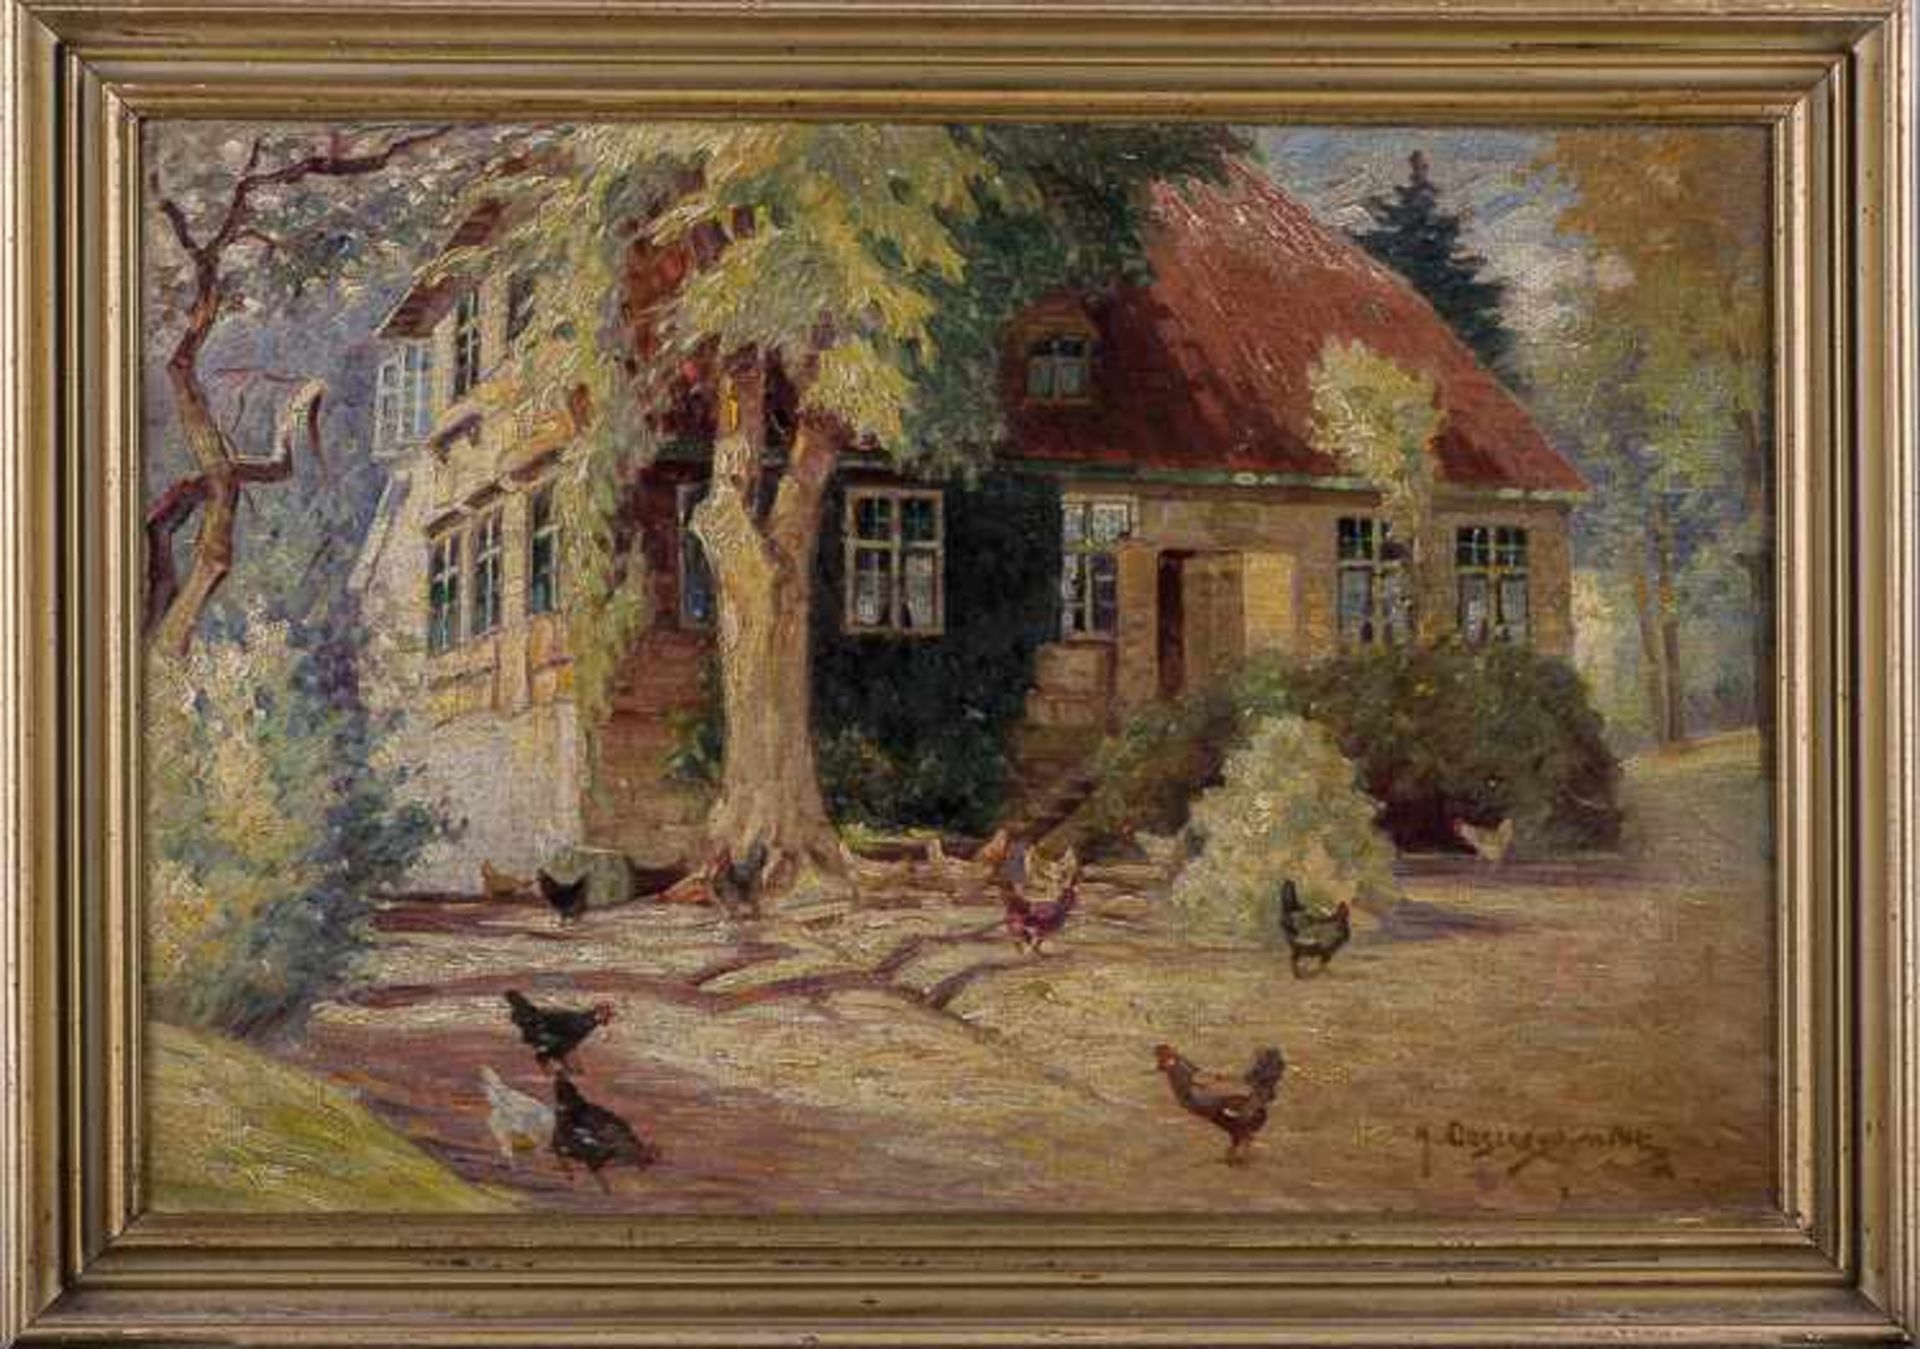 Heinrich OESTERSCHMIDT (XIX-XX) "Bauernkate unter Bäumen mit Hühnern" Gemälde Öl/Leinwand, 40,5 cm x - Image 2 of 7